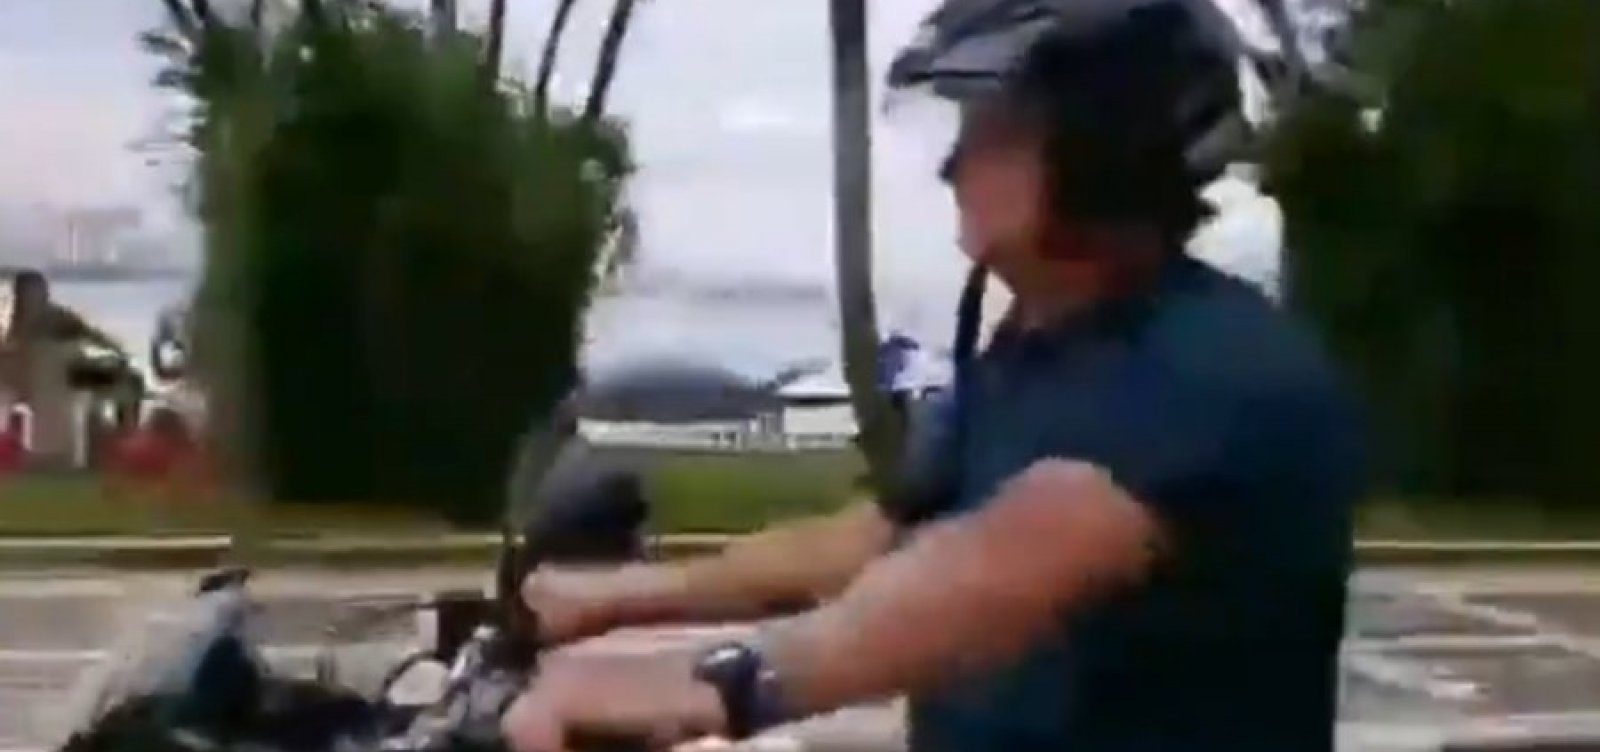 Após circular com capacete solto, Bolsonaro não será multado por infração de trânsito